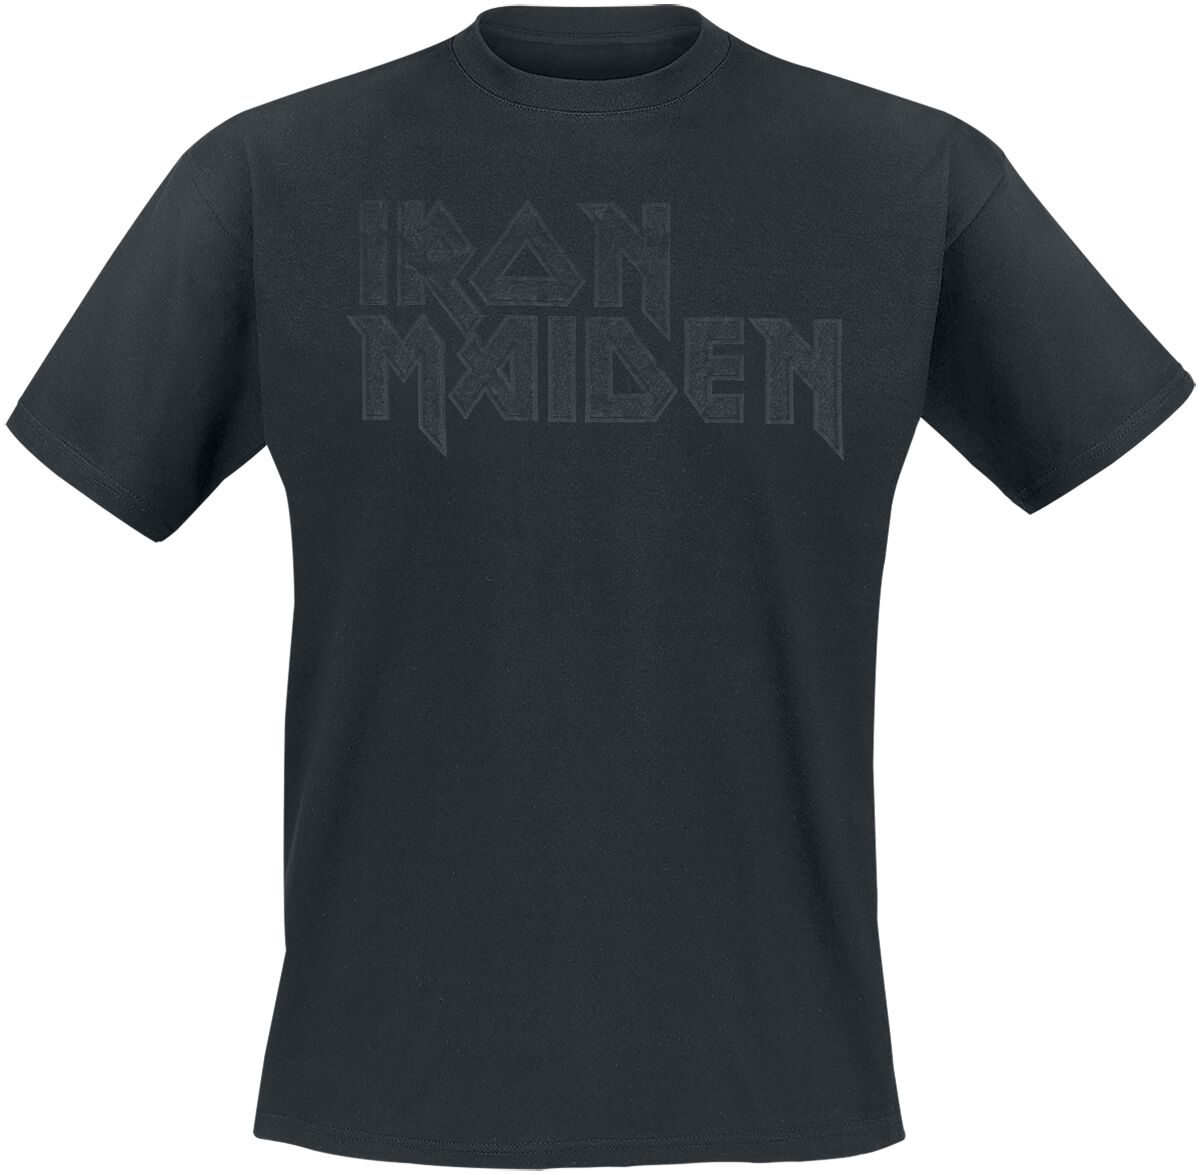 Iron Maiden T-Shirt - Black On Black Logo Stacked - S bis 4XL - für Männer - Größe XXL - schwarz  - Lizenziertes Merchandise!